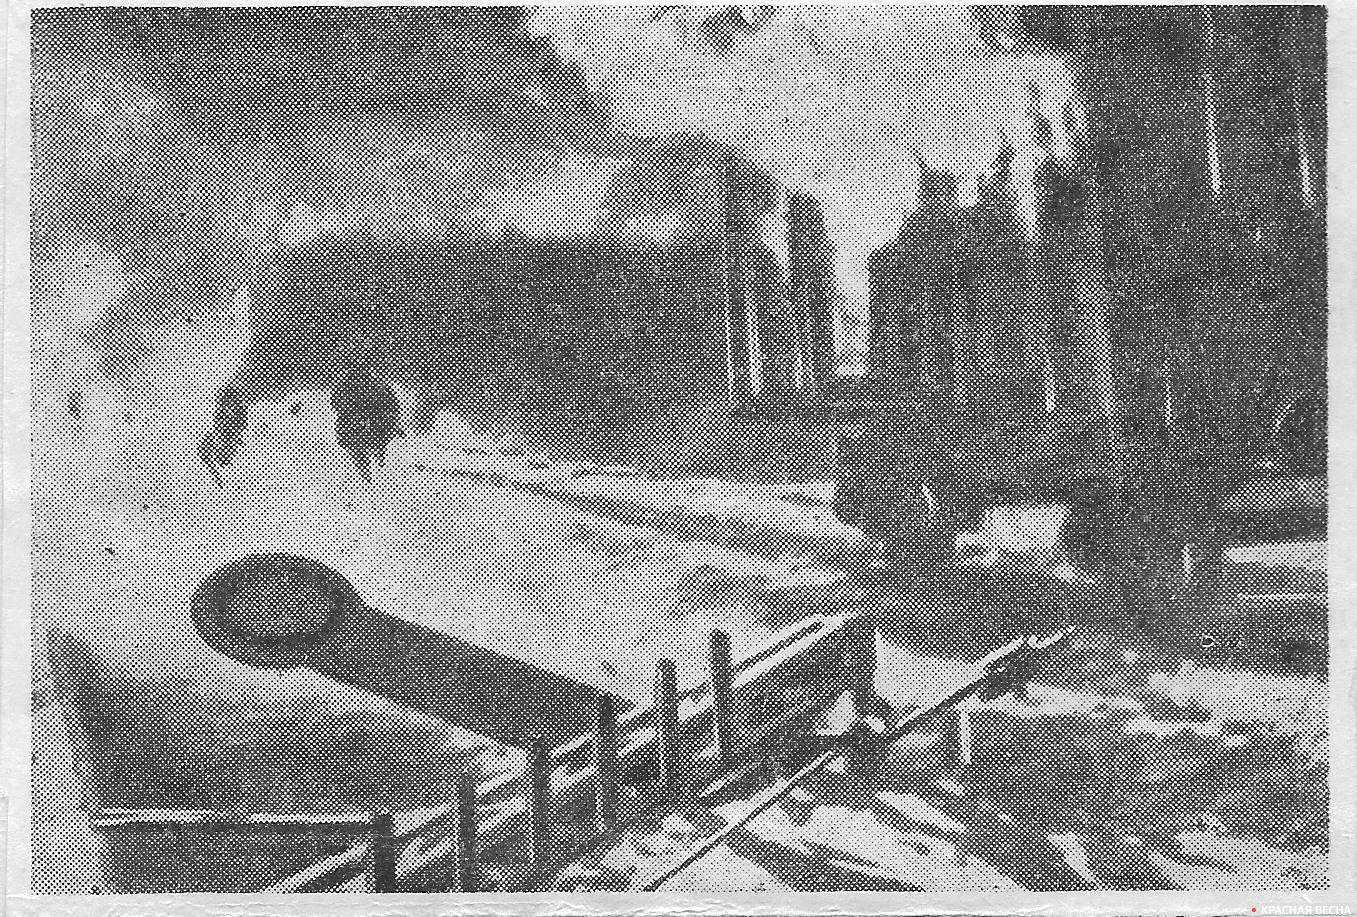 Операция «Рельсовая война» по разрушению железной дороги, занимаемой противником